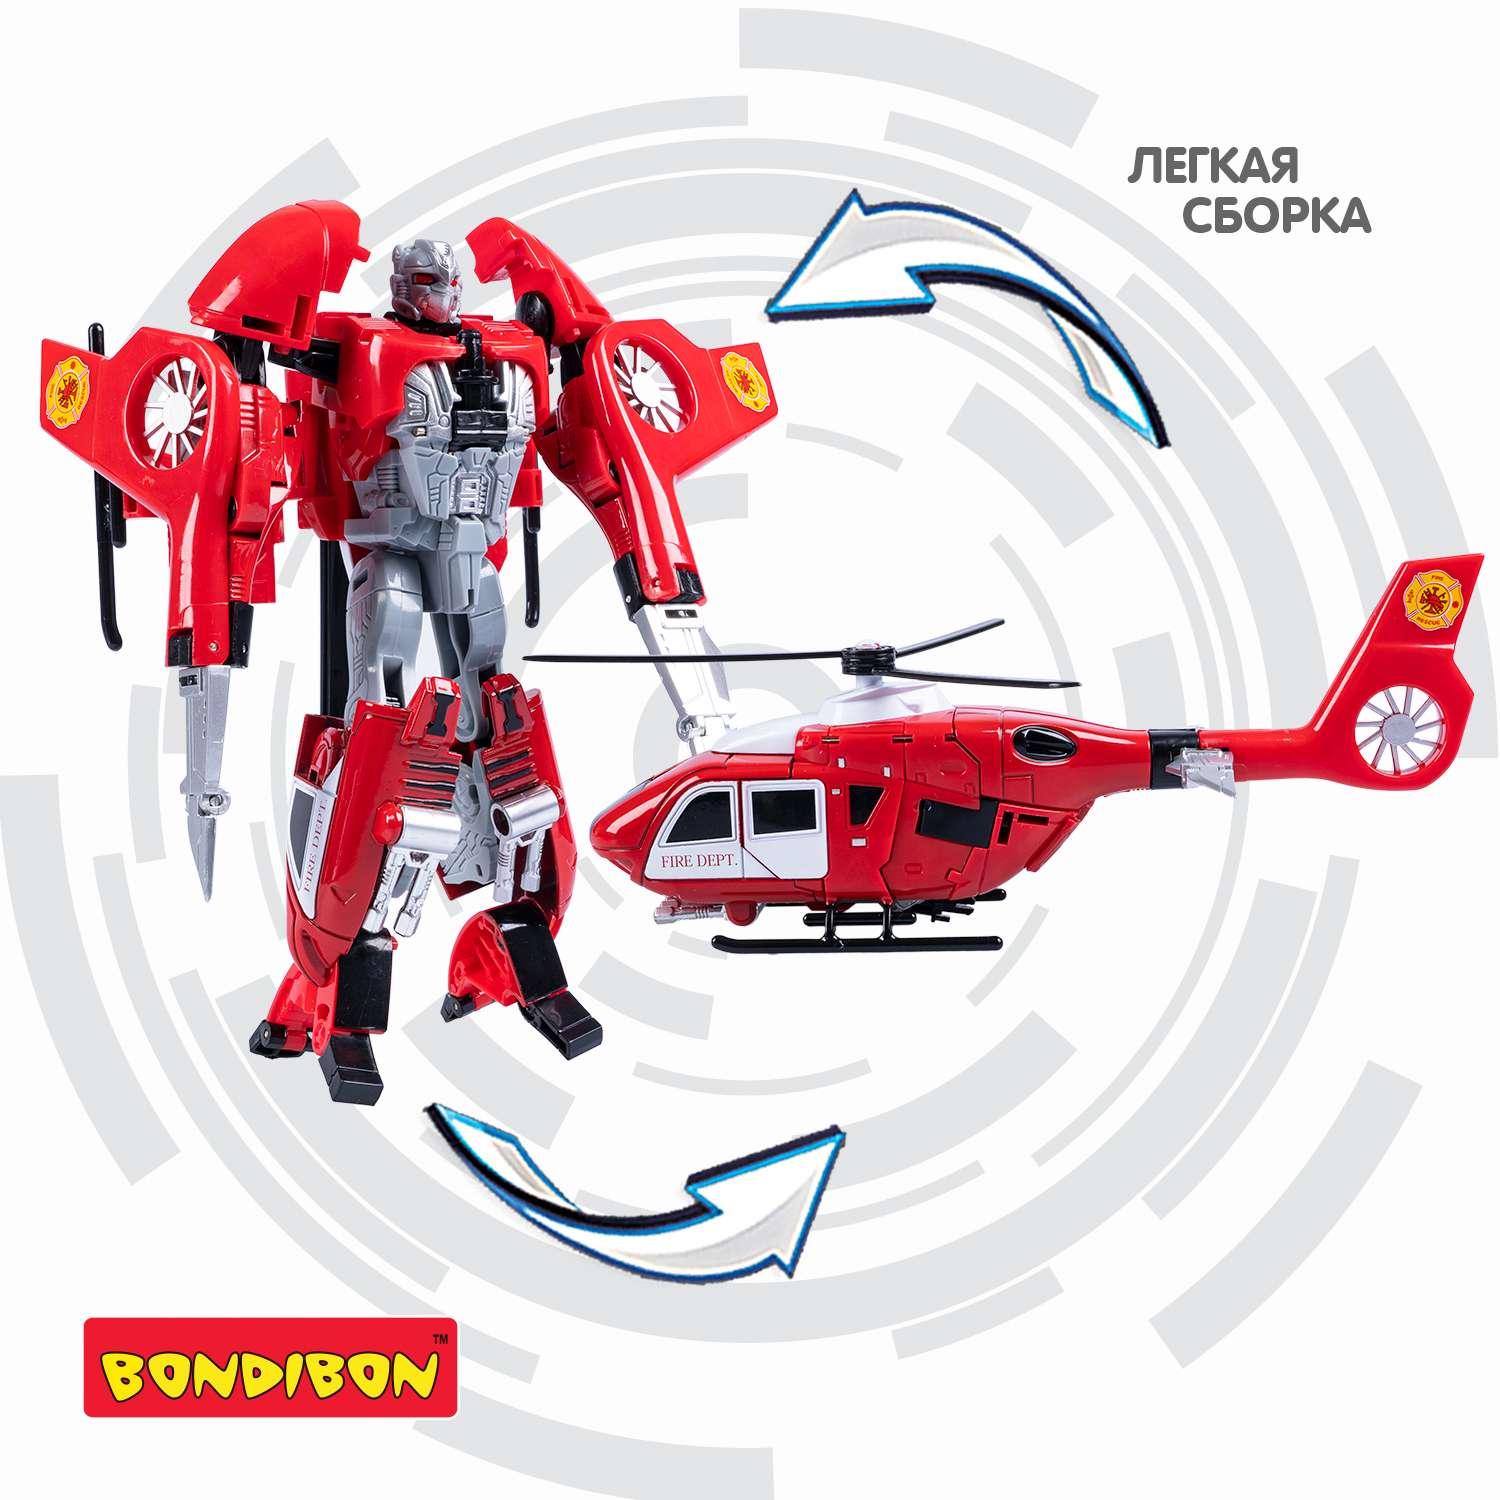 Трансформер BONDIBON 2 в 1 робот -вертолет красного цвета - фото 6